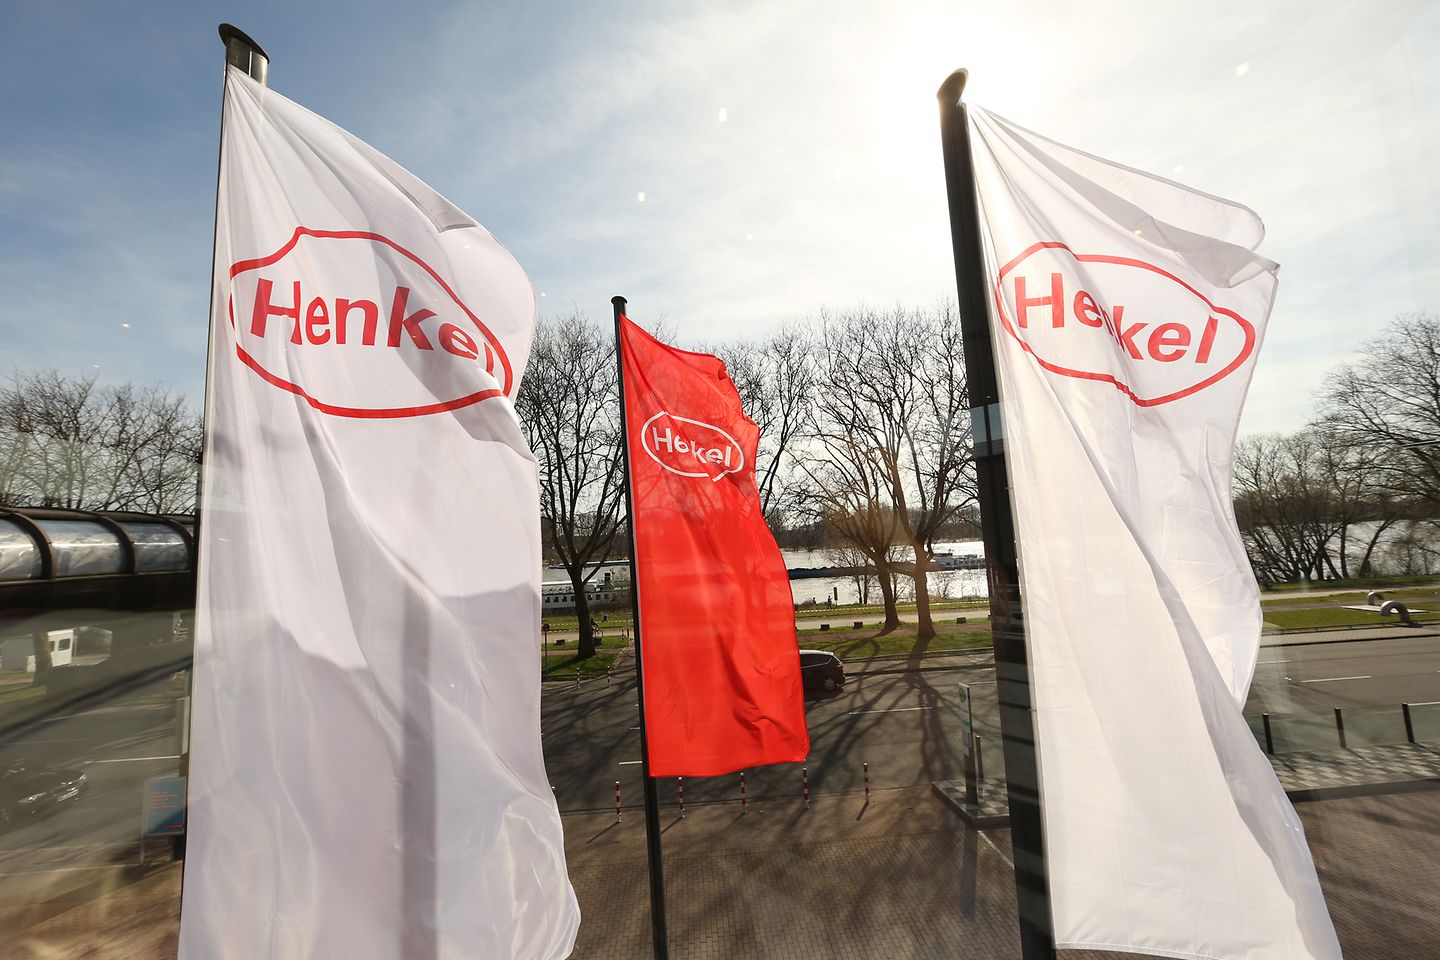 
Henkel Annual General Meeting 2018